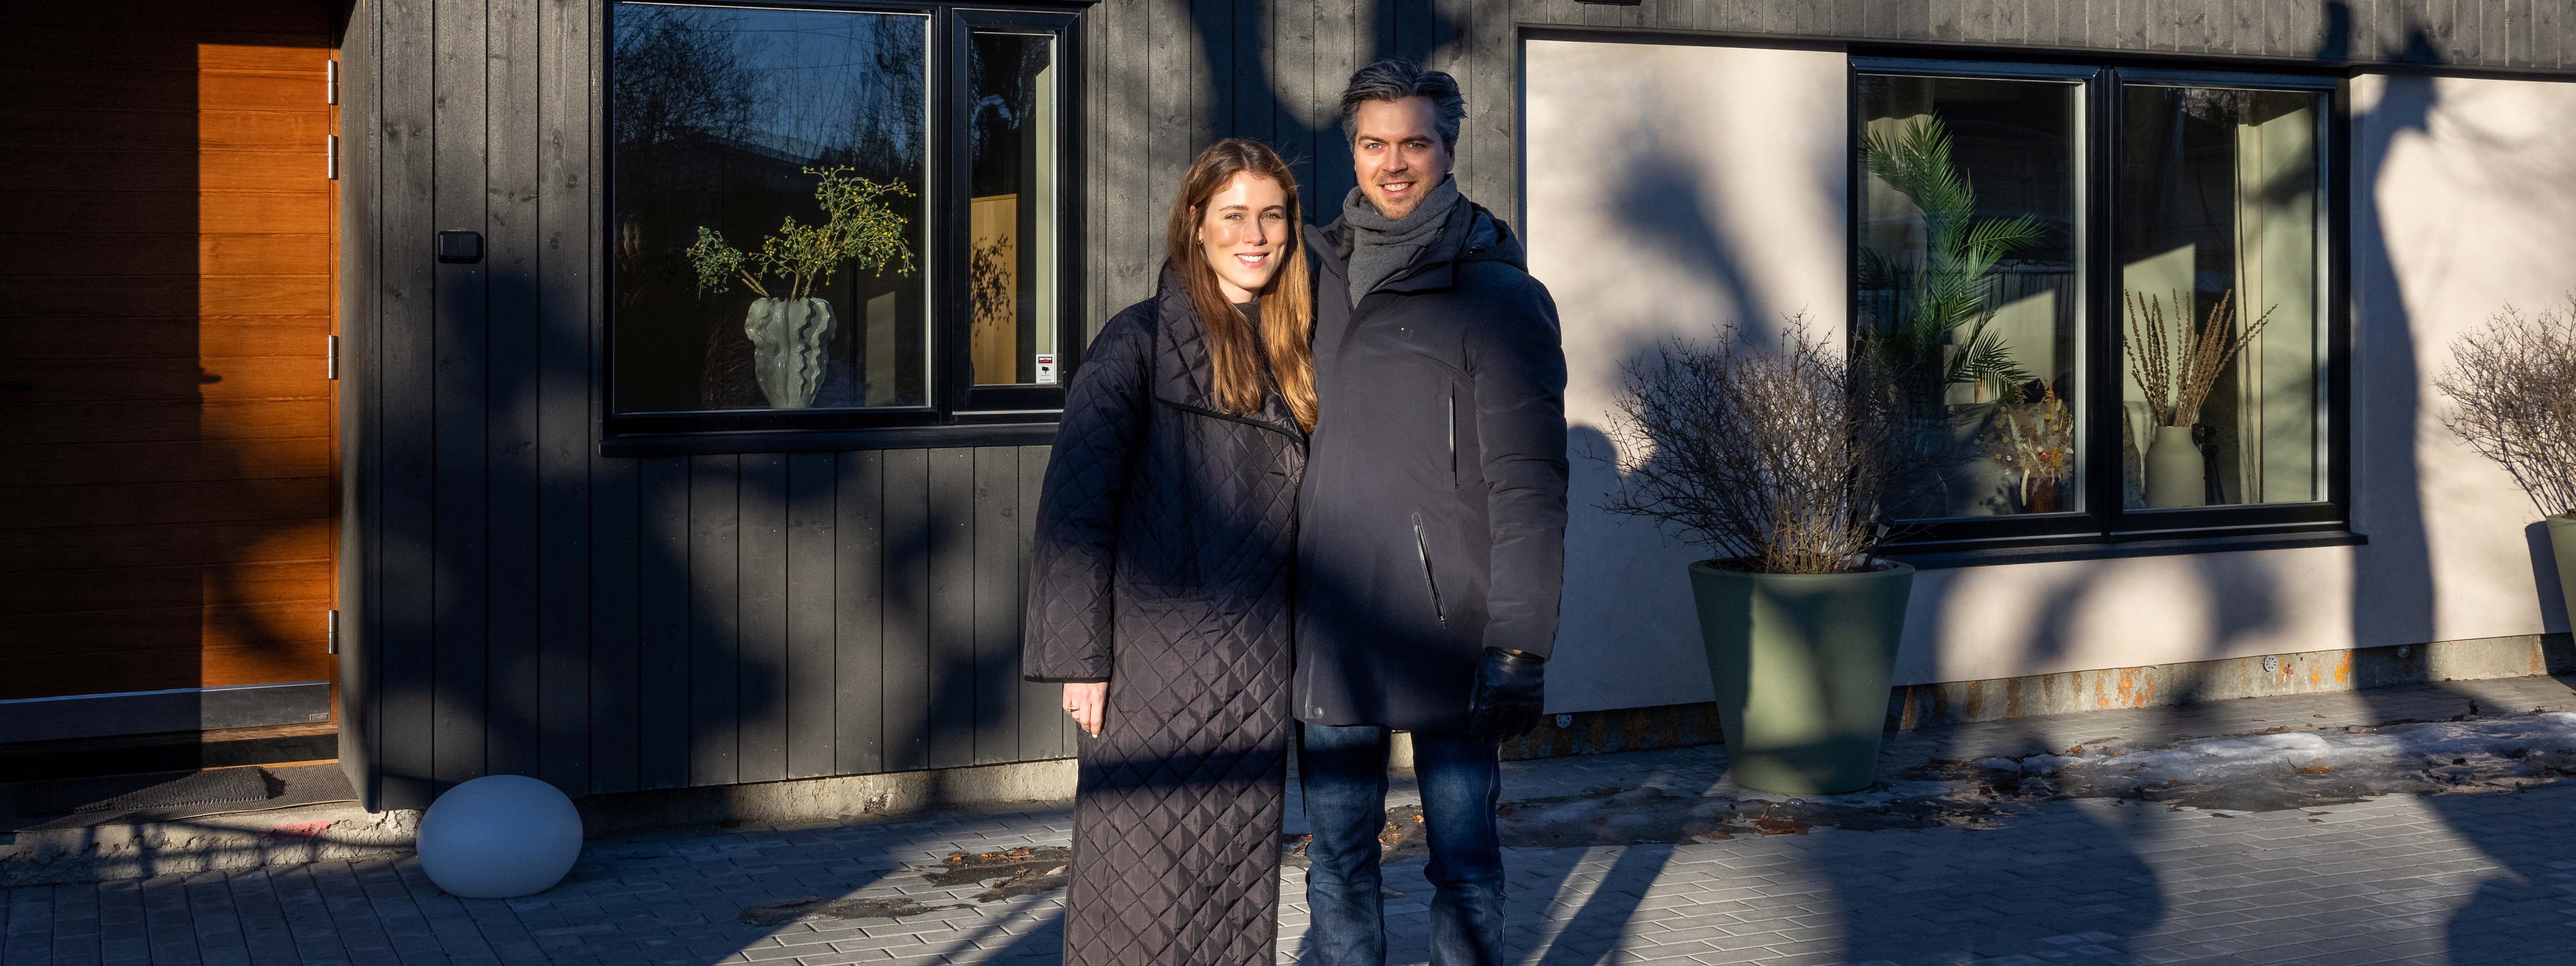 Anabel og Petter foran huset sitt med Heftig kledning fra Moelven.